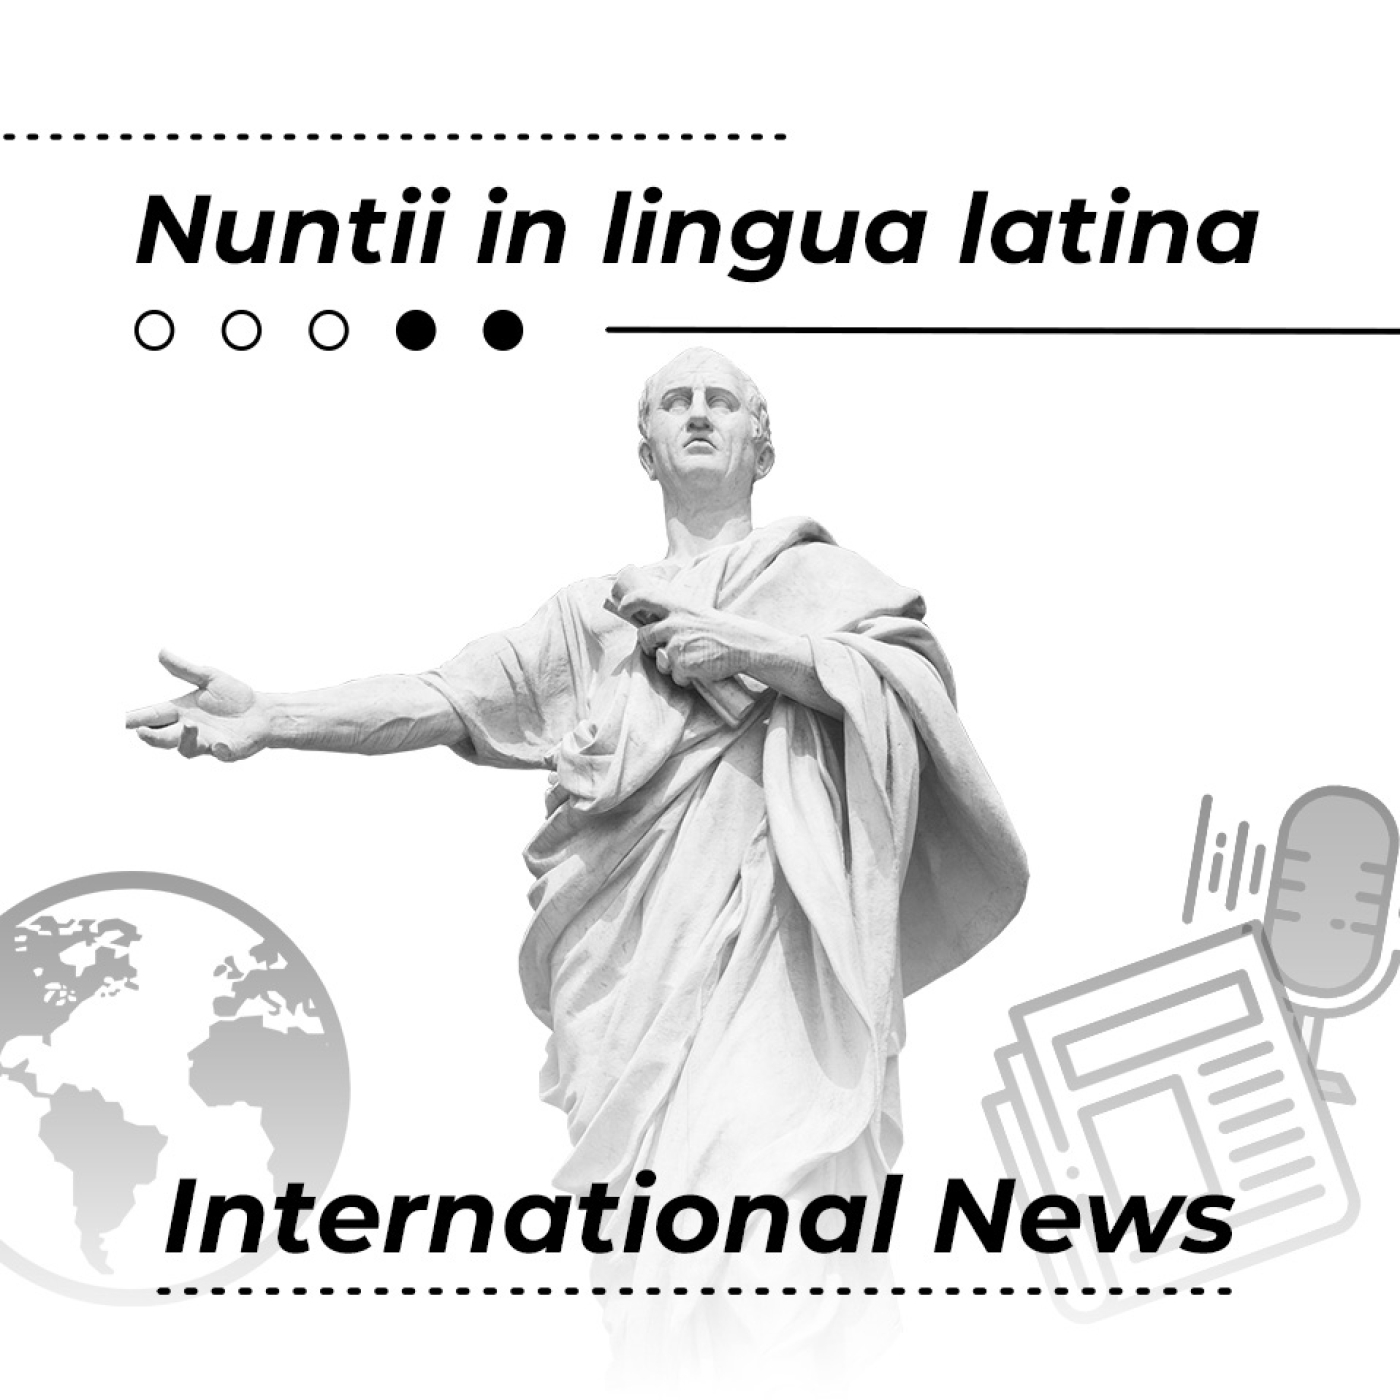 Nuntii in lingua latina E.12 T.12: Andron humanitario pro palestinensibus CREANT.